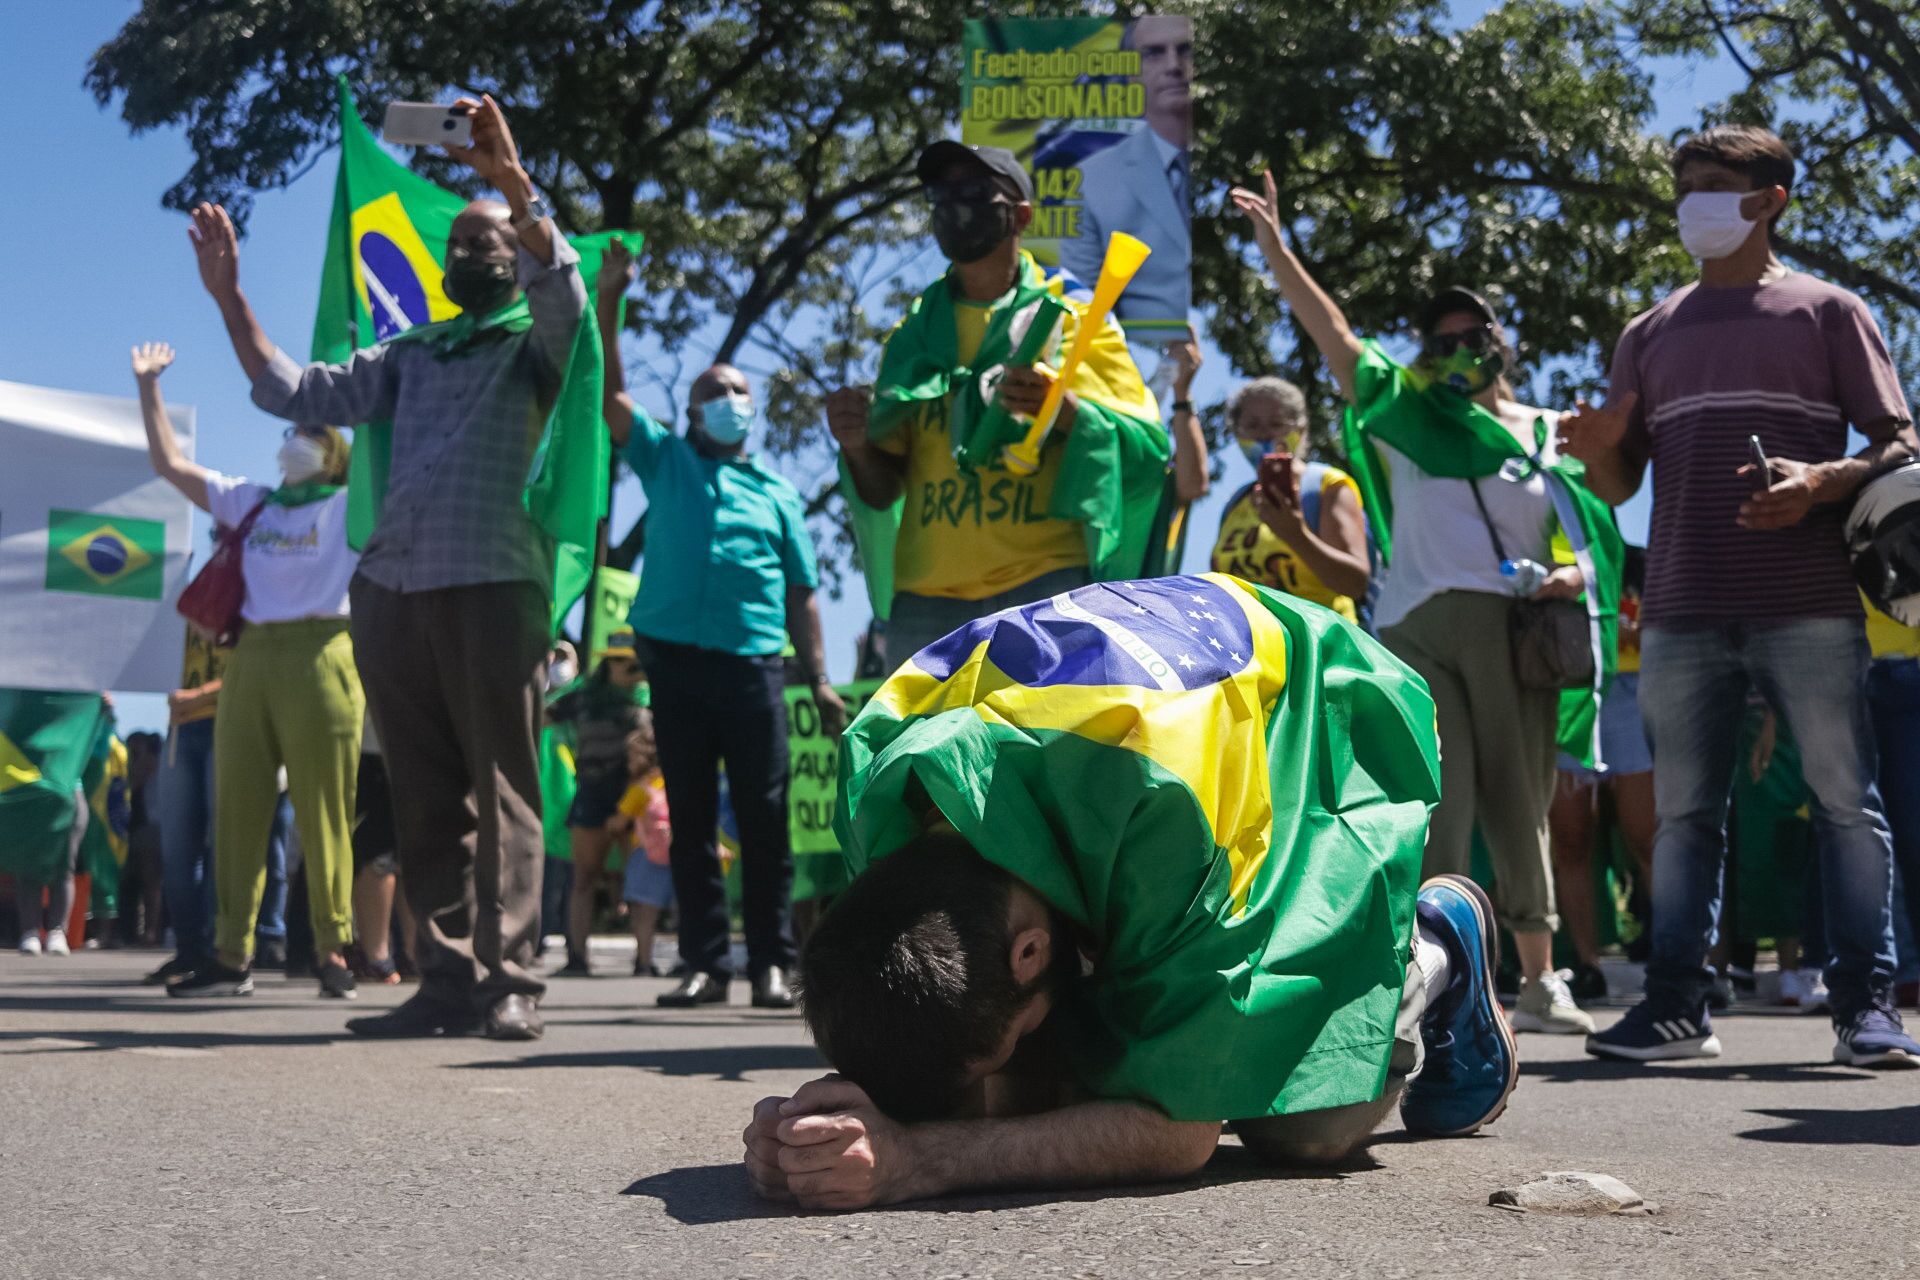 Ato pró-Bolsonaro: pauta do voto impresso é 'narrativa para contestar 2022', diz especialista - Sputnik Brasil, 1920, 14.05.2021